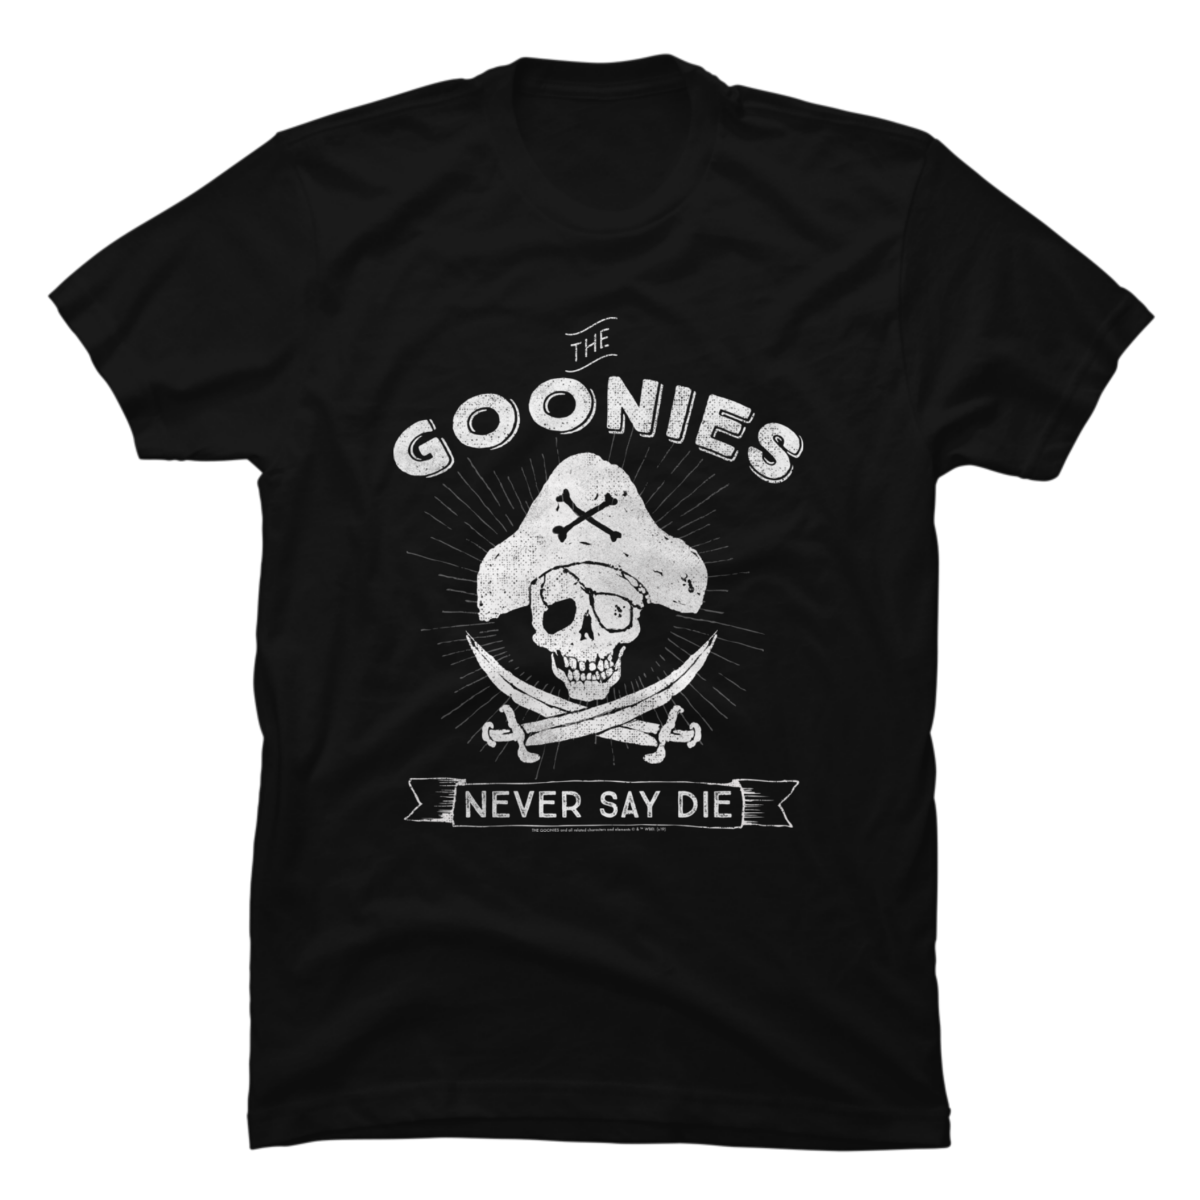 goonies never say die t shirt